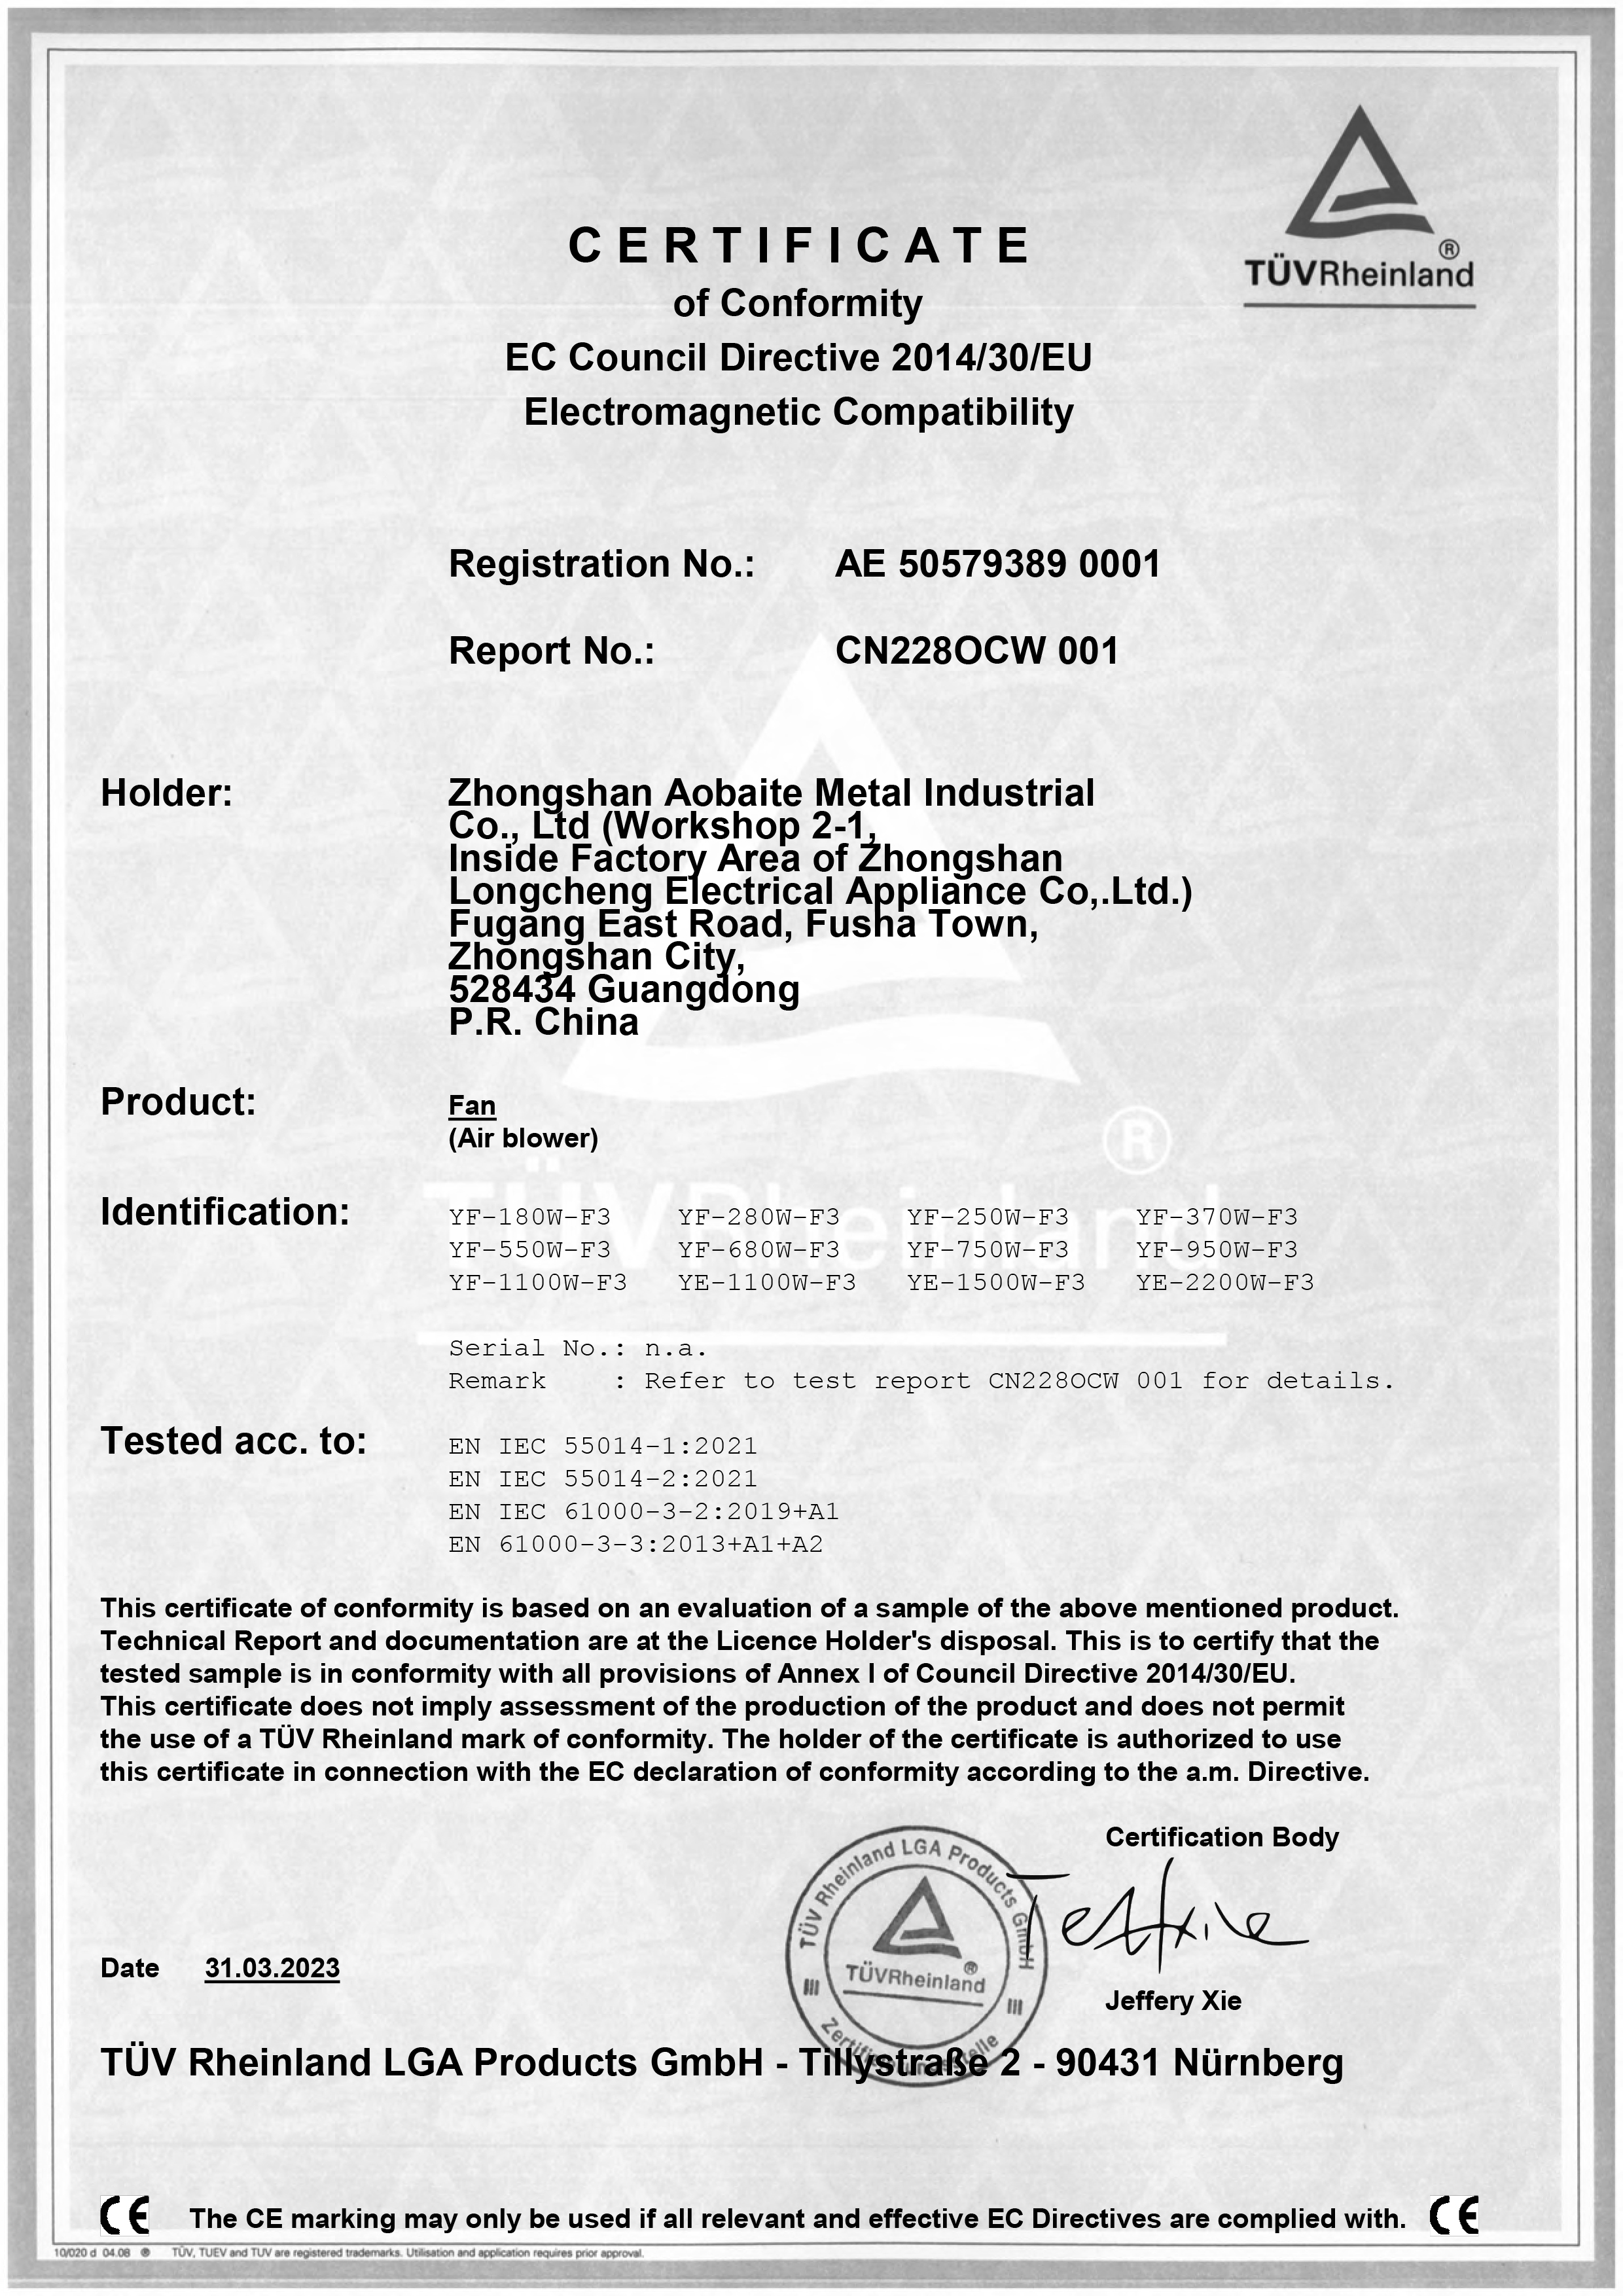 澳佰特TUV莱茵CE(EMC)证书-1